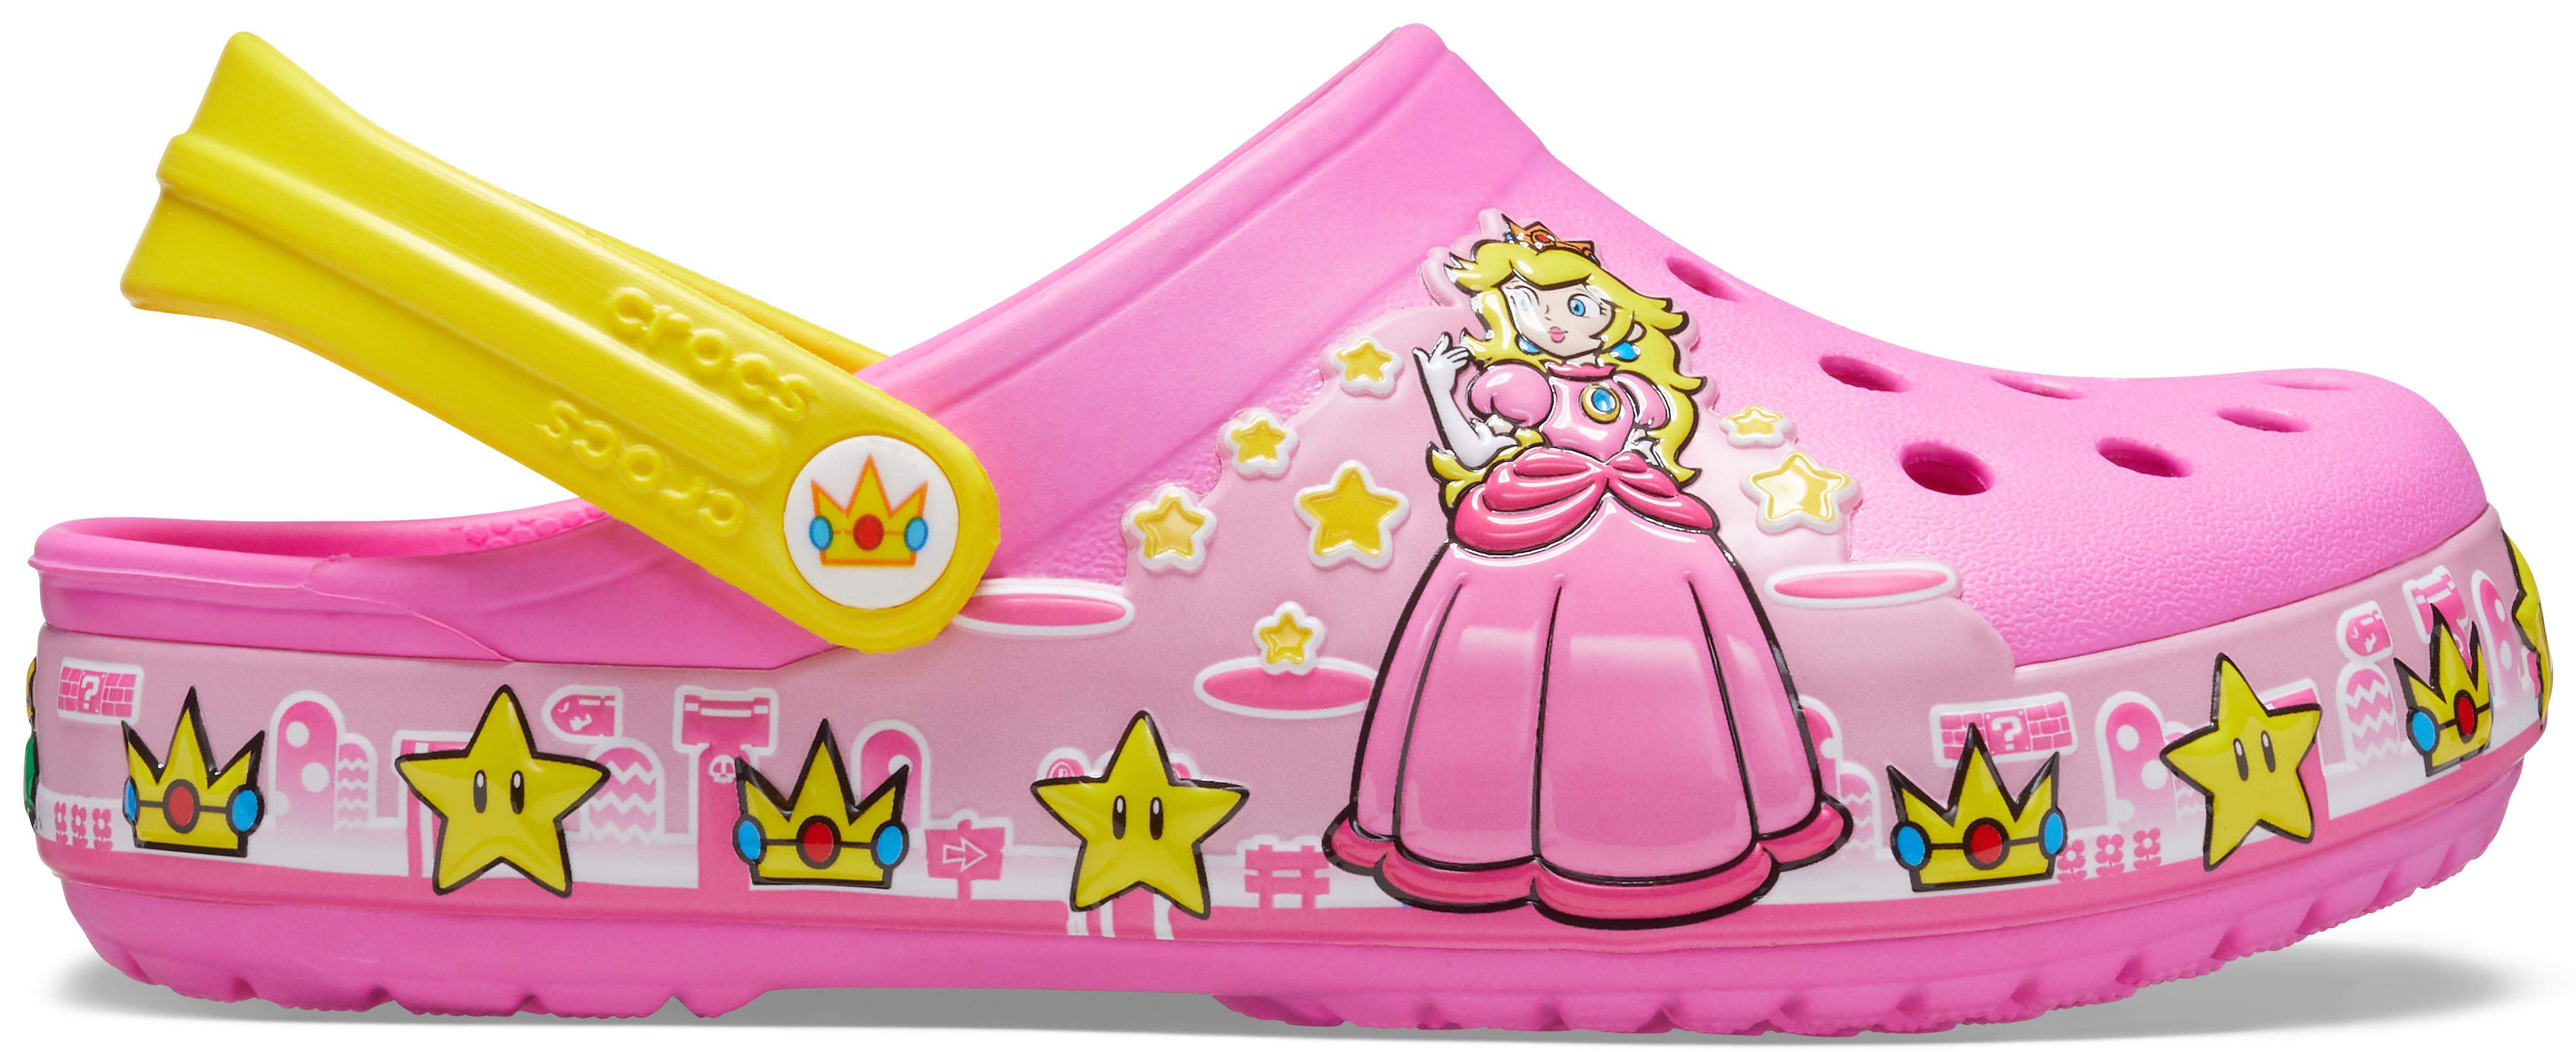 princess light up crocs